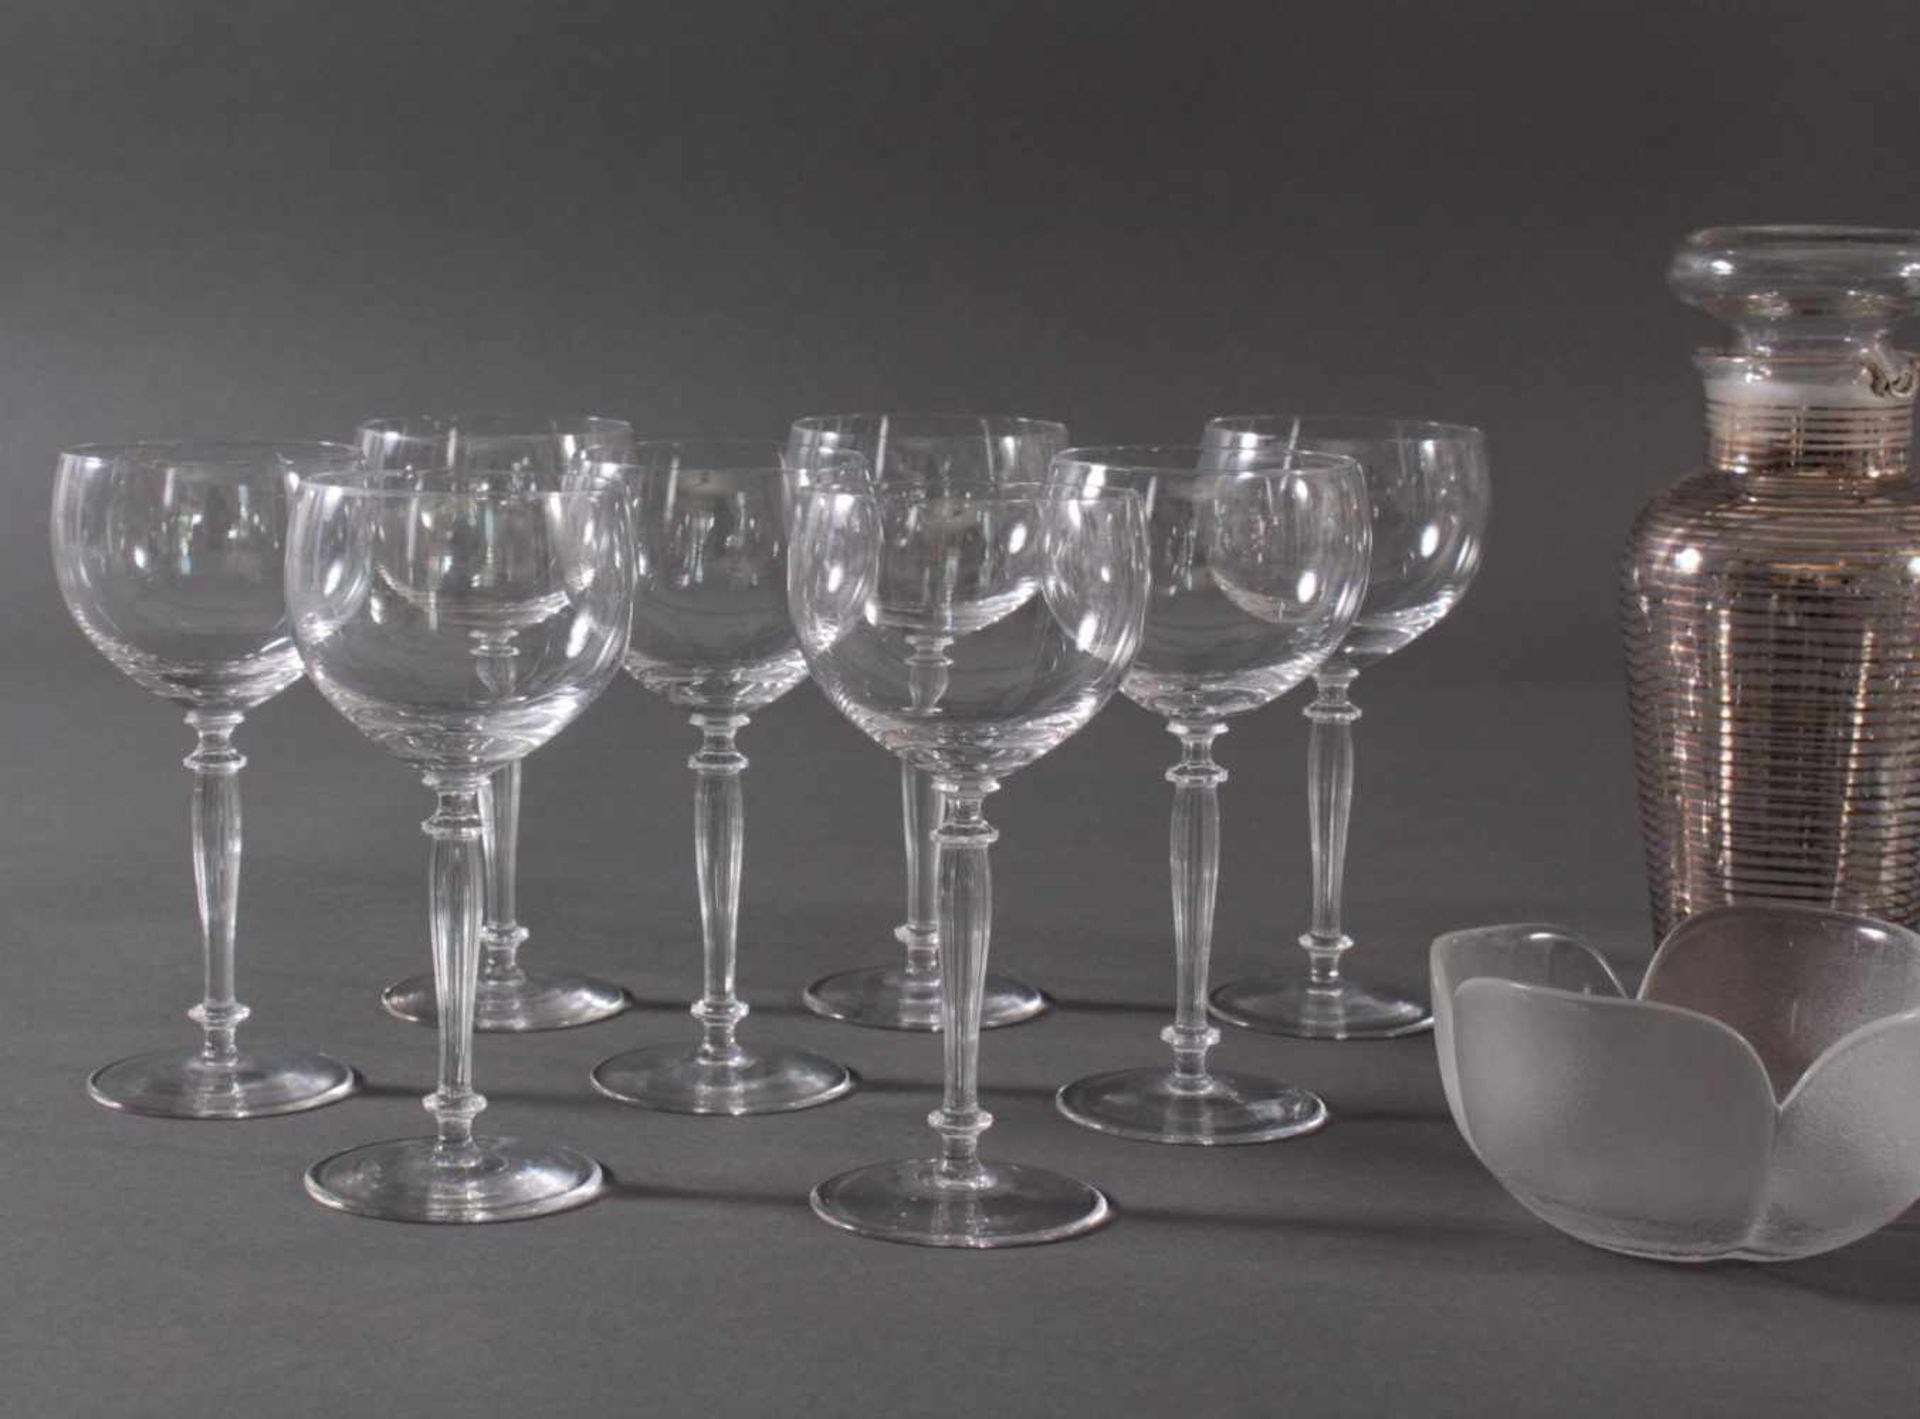 17 Teile unterschiedliche GläserFarbloses Glas. 8 Rosenthal-Obstschalen, dickwandig mattiertes Glas, - Image 2 of 3